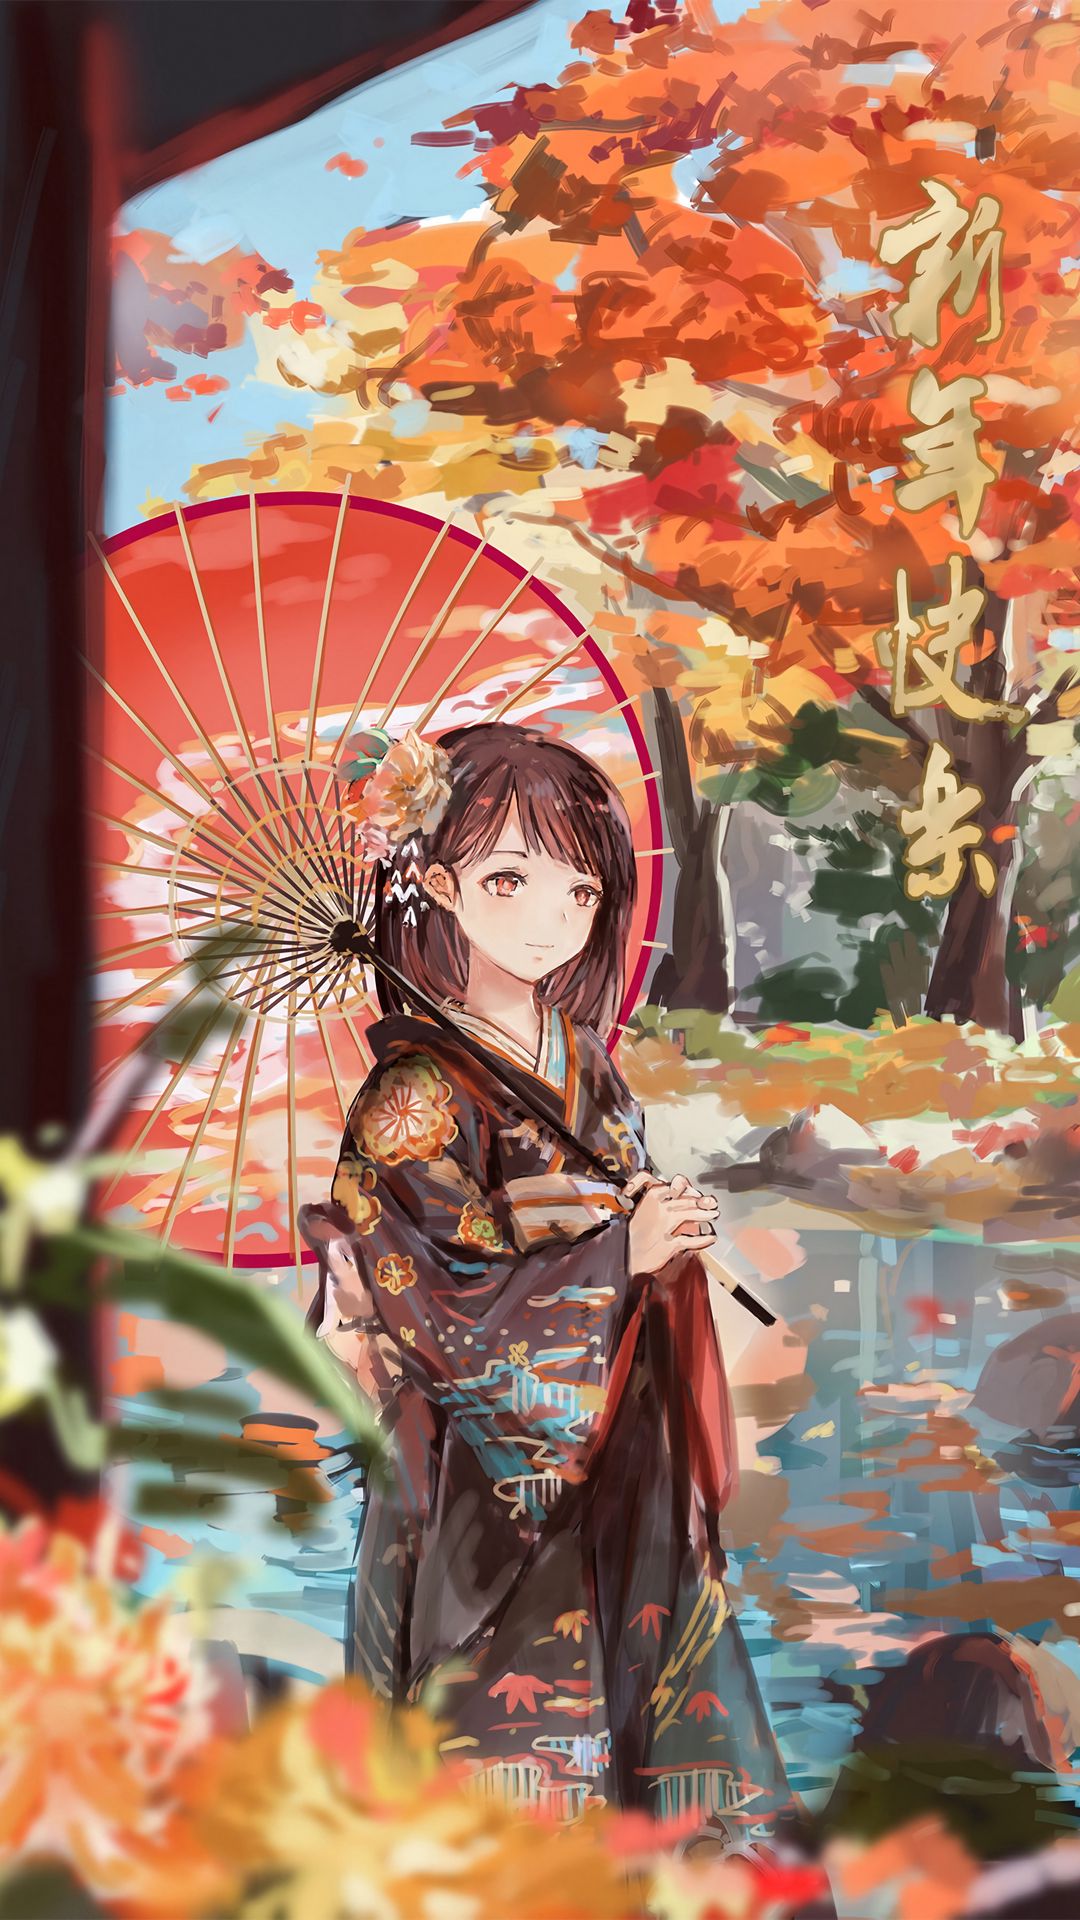 Happy Autumn! 🍂 [via Rurouni Kenshin] #rurounikenshin #anime #aniplex  #kenshin | Instagram